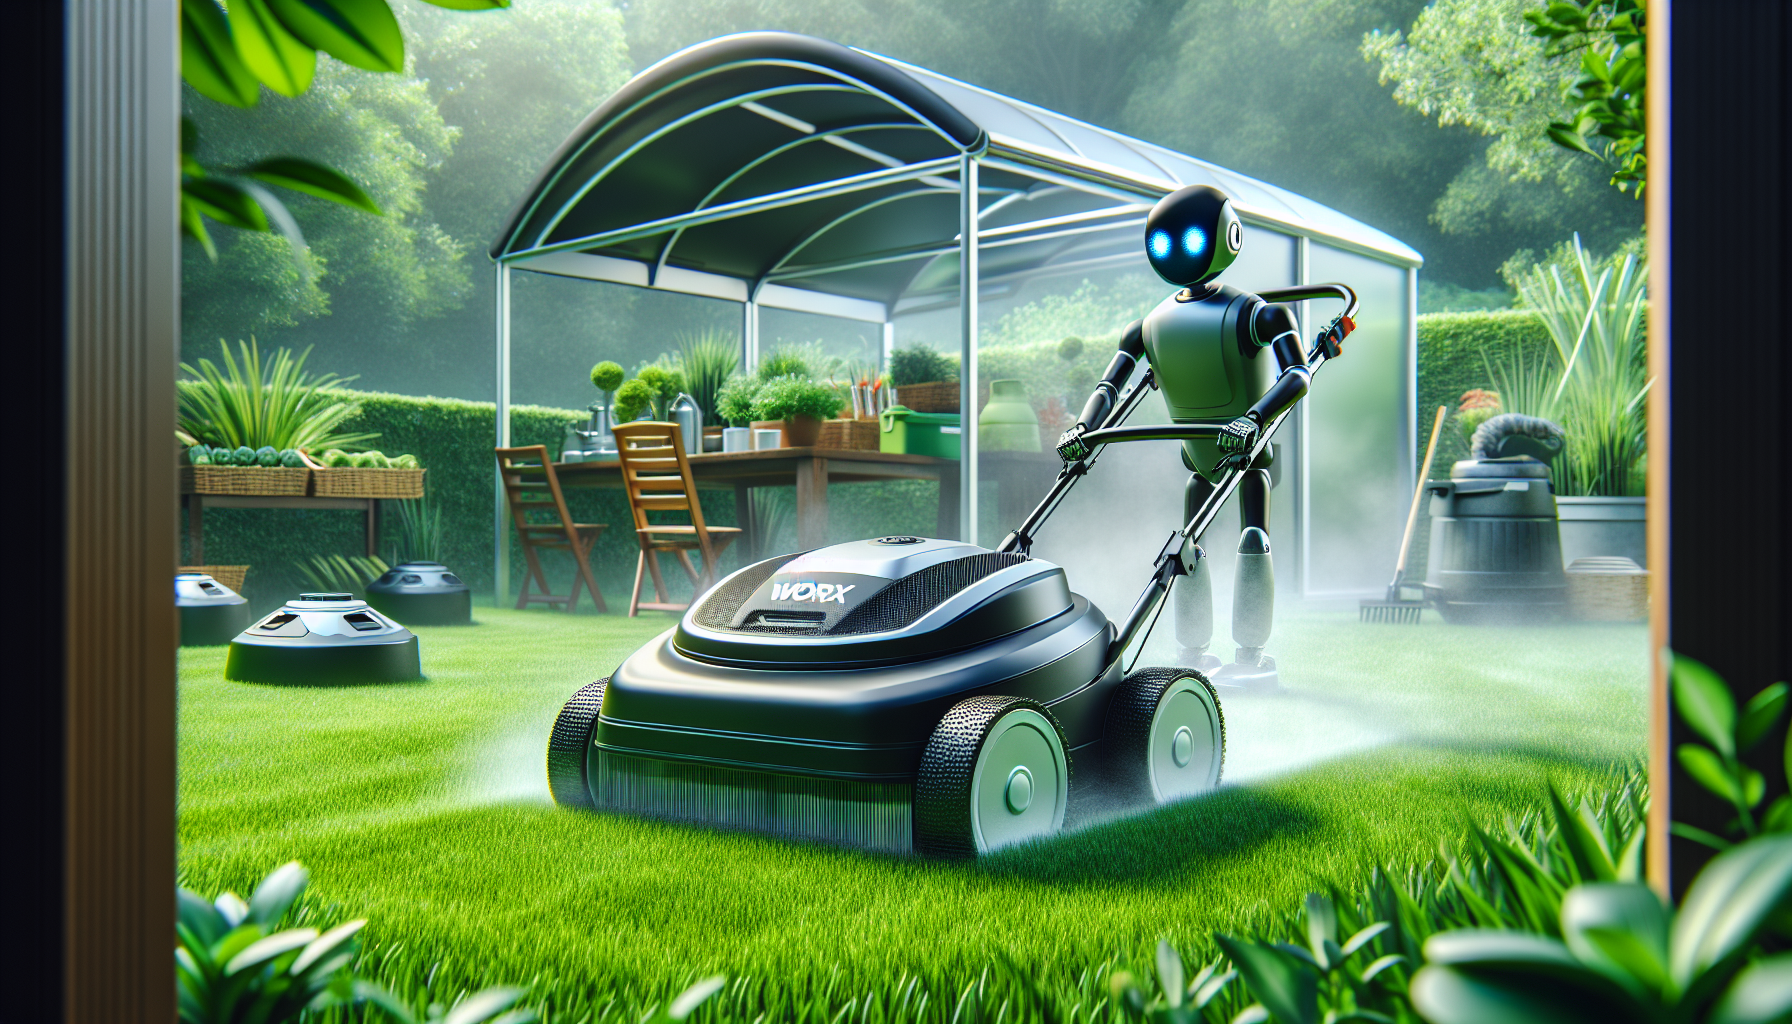 découvrez comment l'abri pour robot tondeuse worx peut faciliter l'entretien de votre jardin grâce à sa conception ingénieuse et son efficacité. optez pour une solution pratique pour votre jardinage.